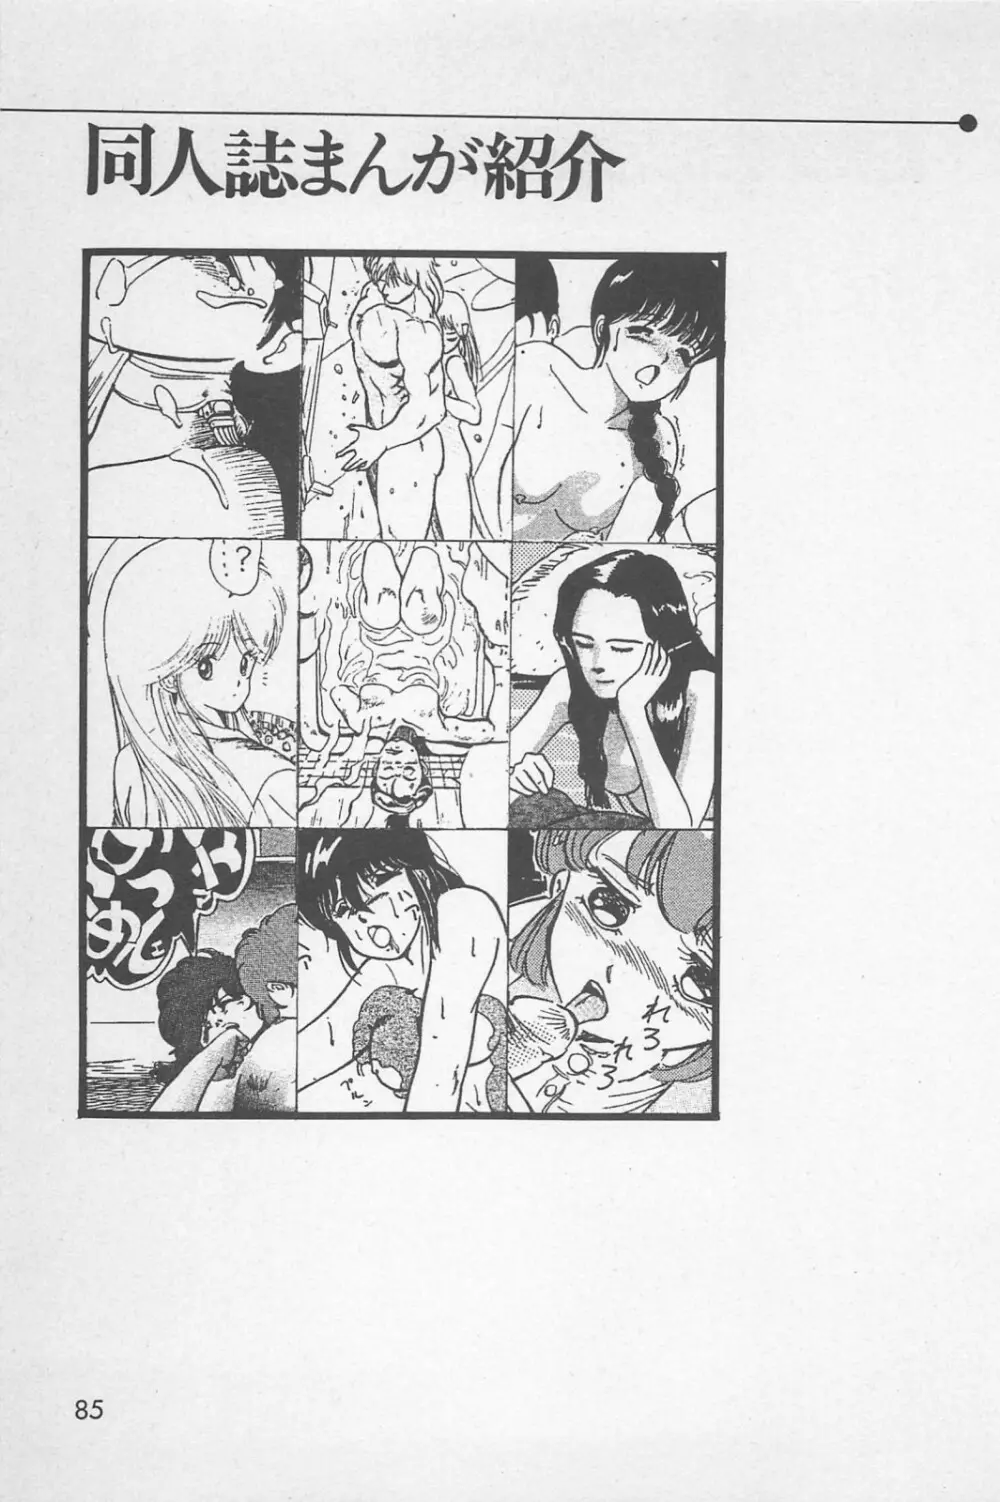 美少女症候群 1985 87ページ